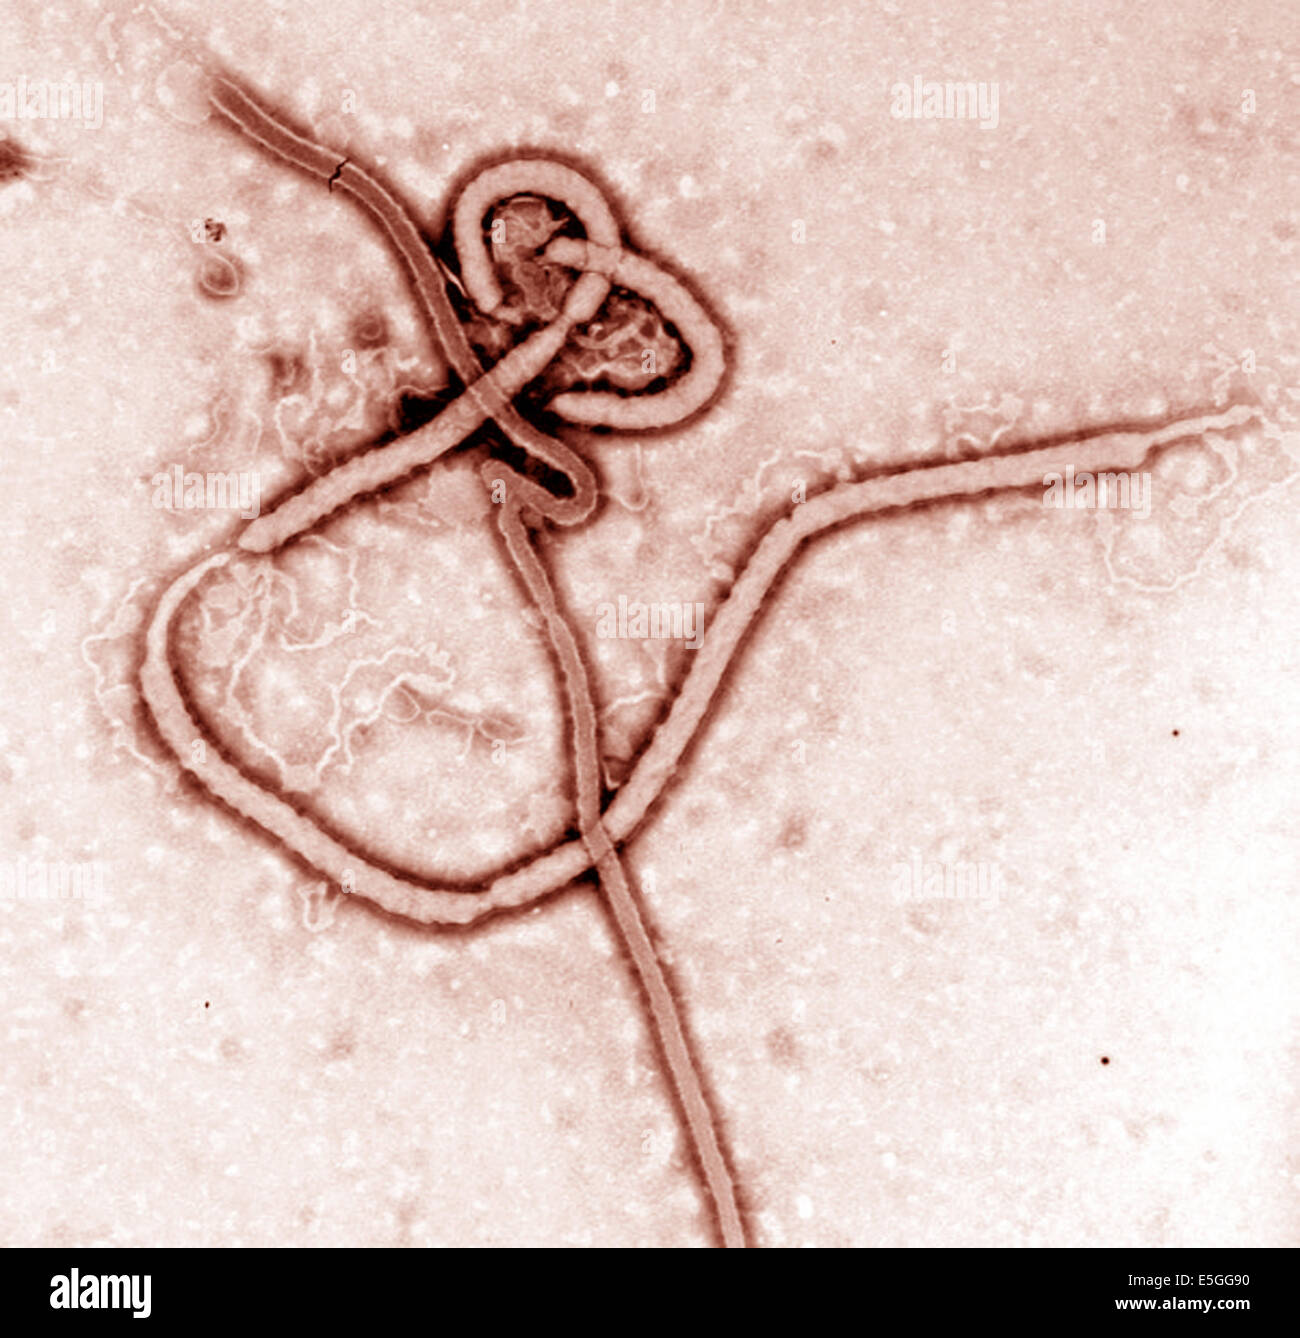 Il virus Ebola. Ebola febbre emorragica Ebola (HF) è una grave e spesso irreversibile della malattia negli esseri umani e primati non umani (scimmie, g Foto Stock